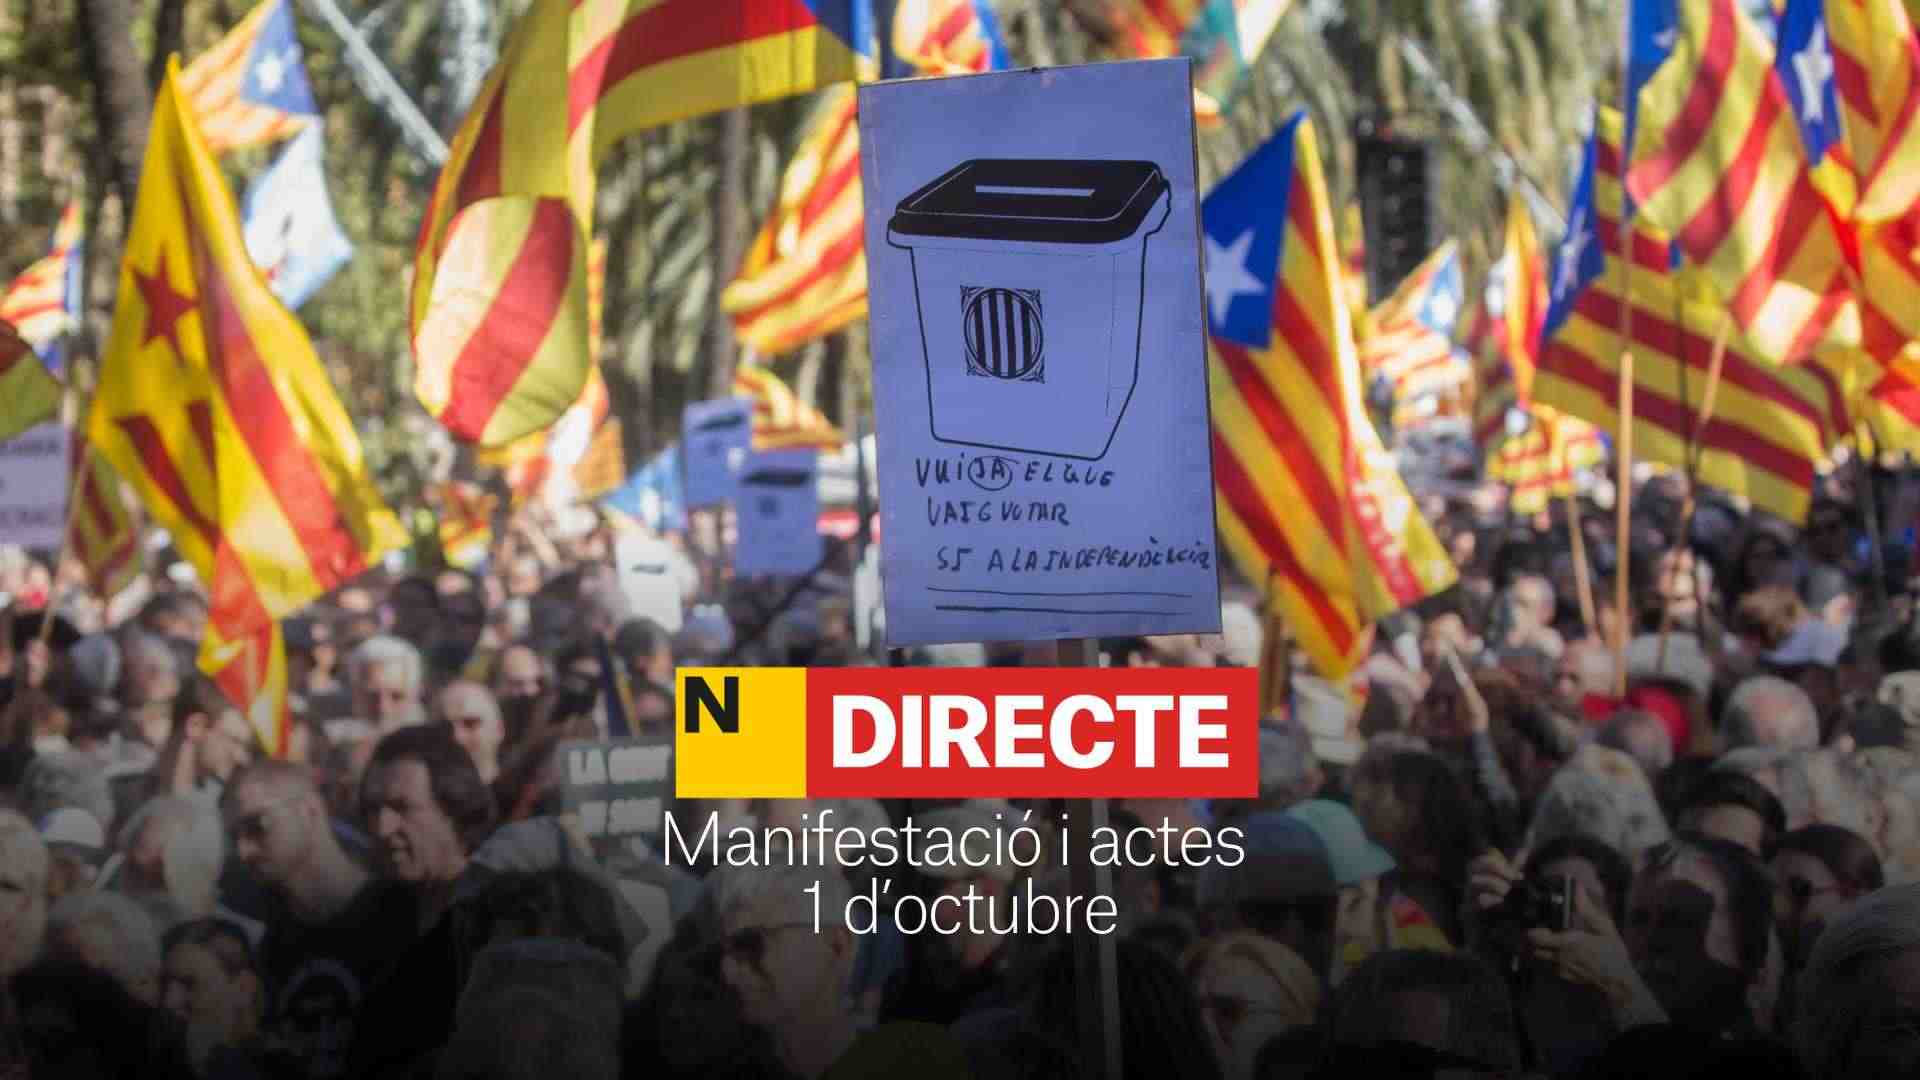 Manifestació de l’1 d’octubre i actes a Barcelona, DIRECTE | Última hora de les mobilitzacions a Catalunya